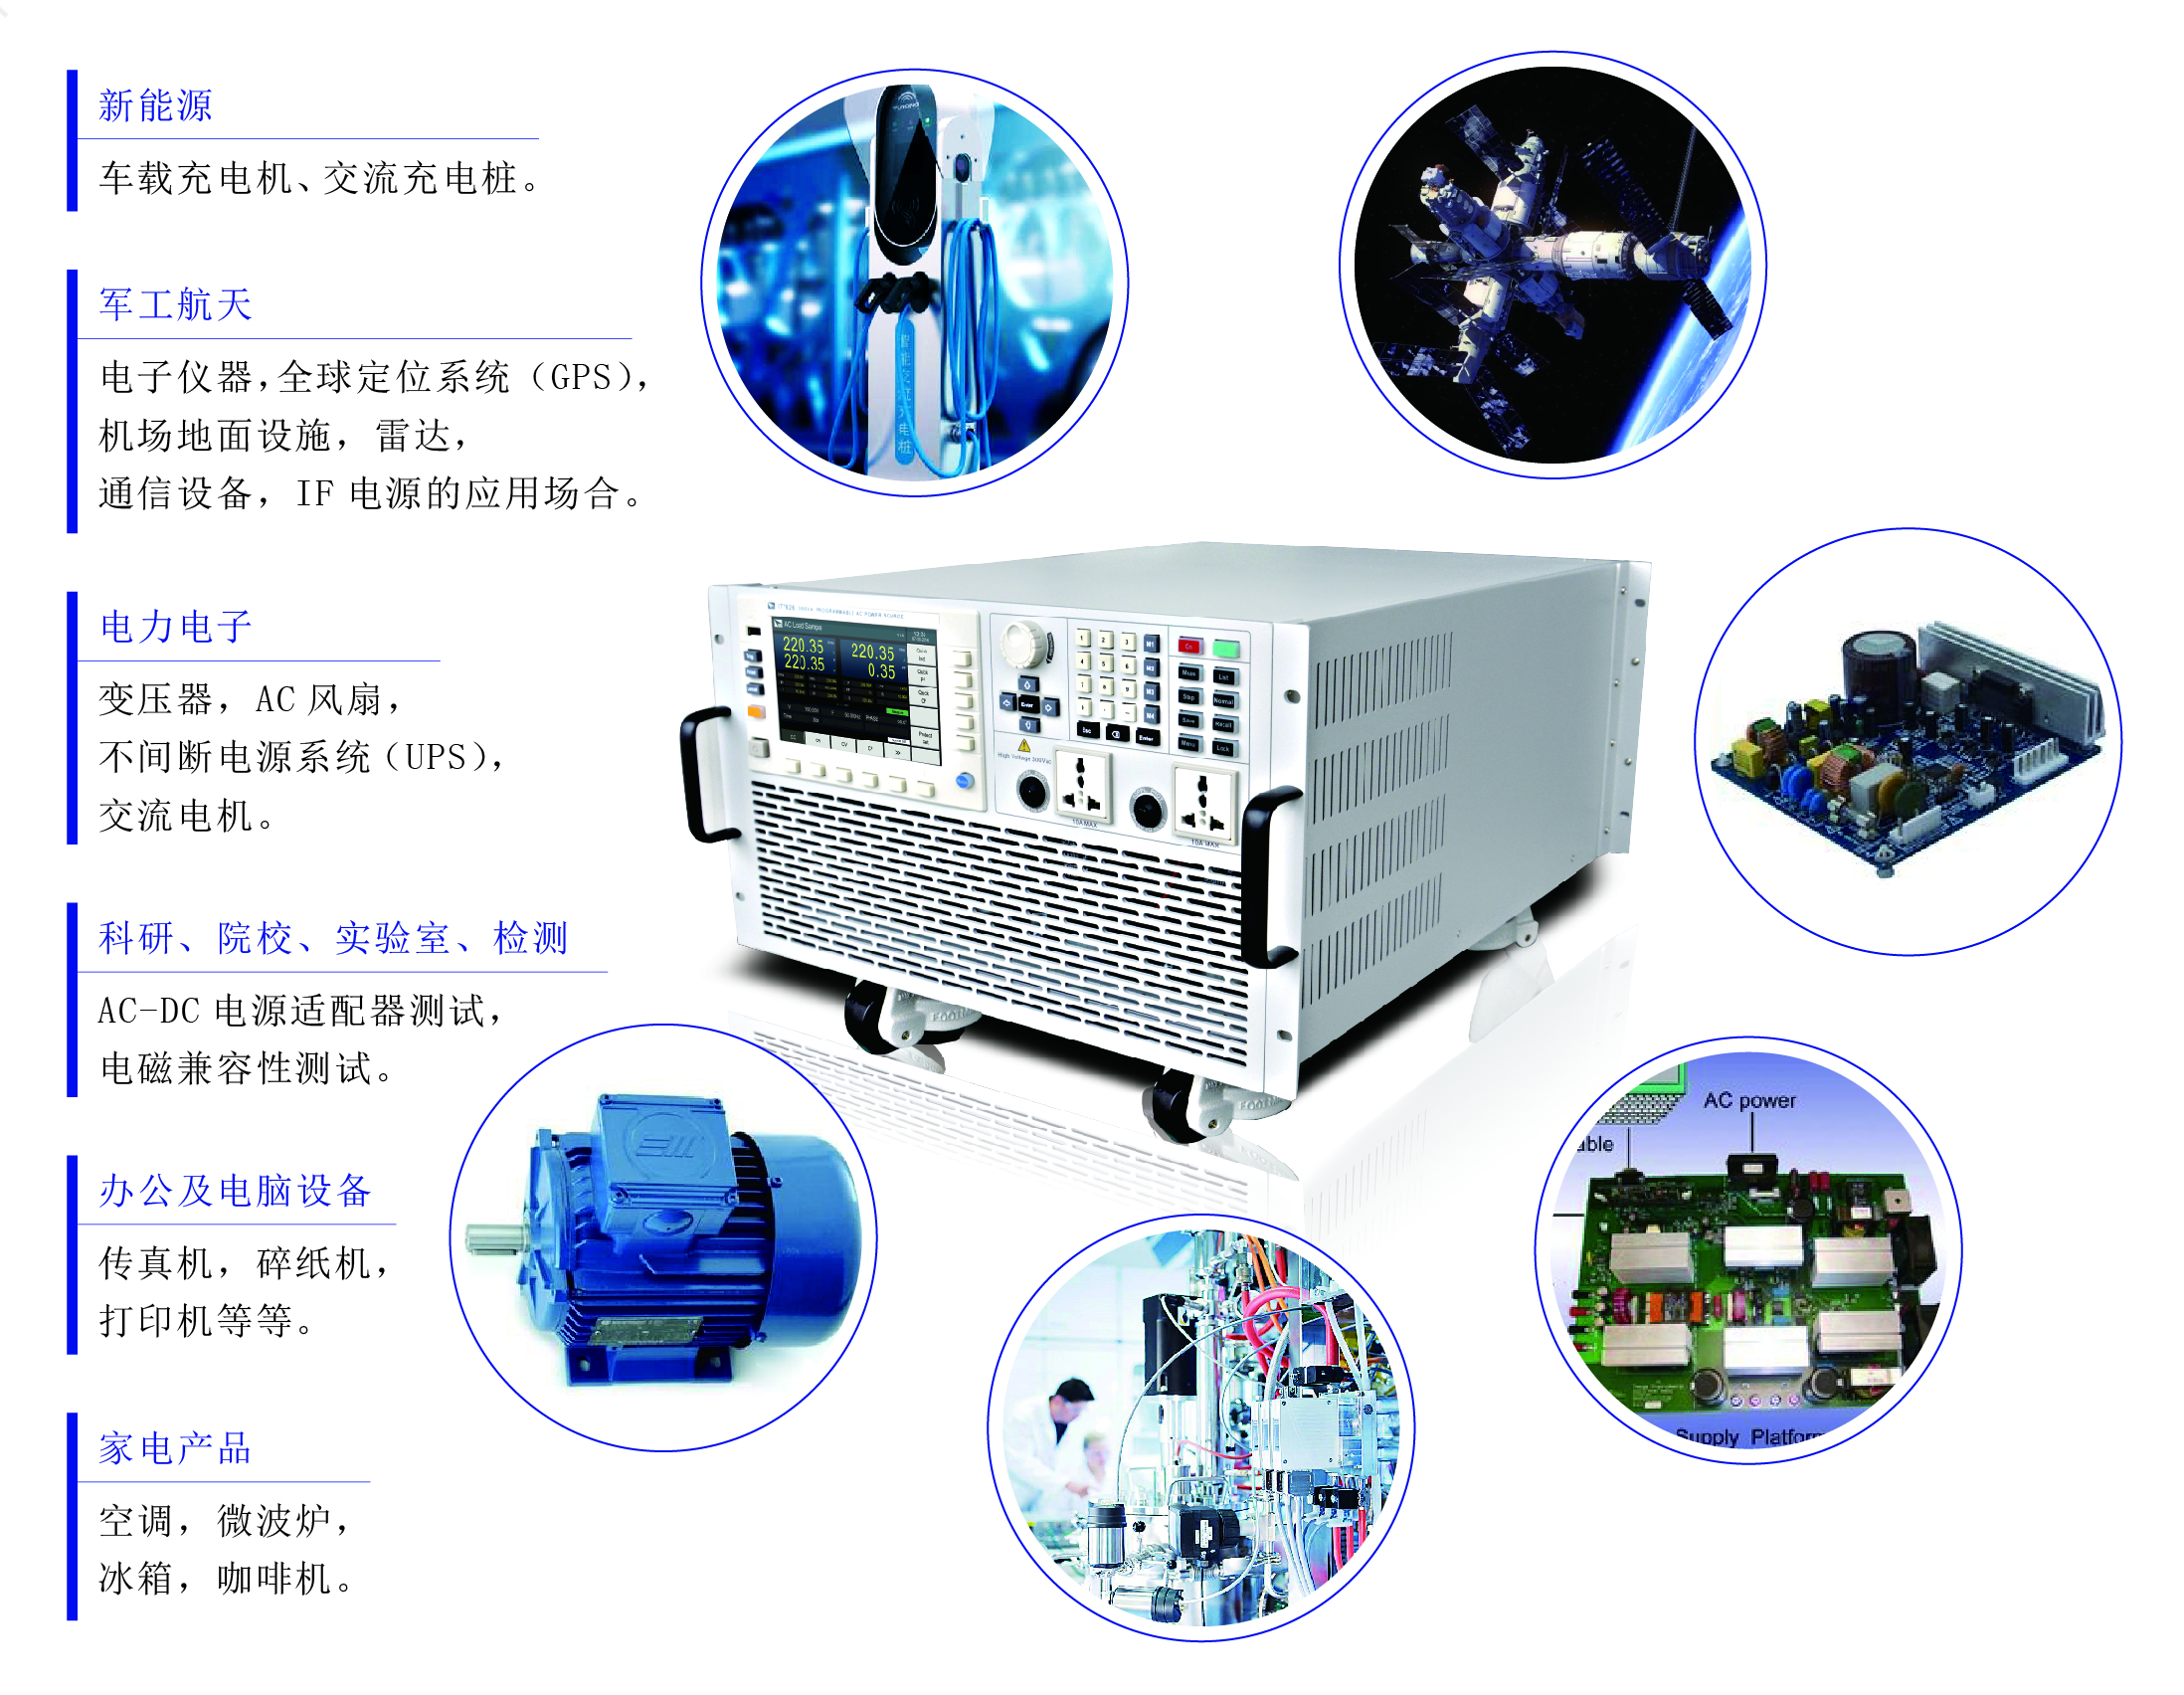 IT7600系列高性能可编程交流电源